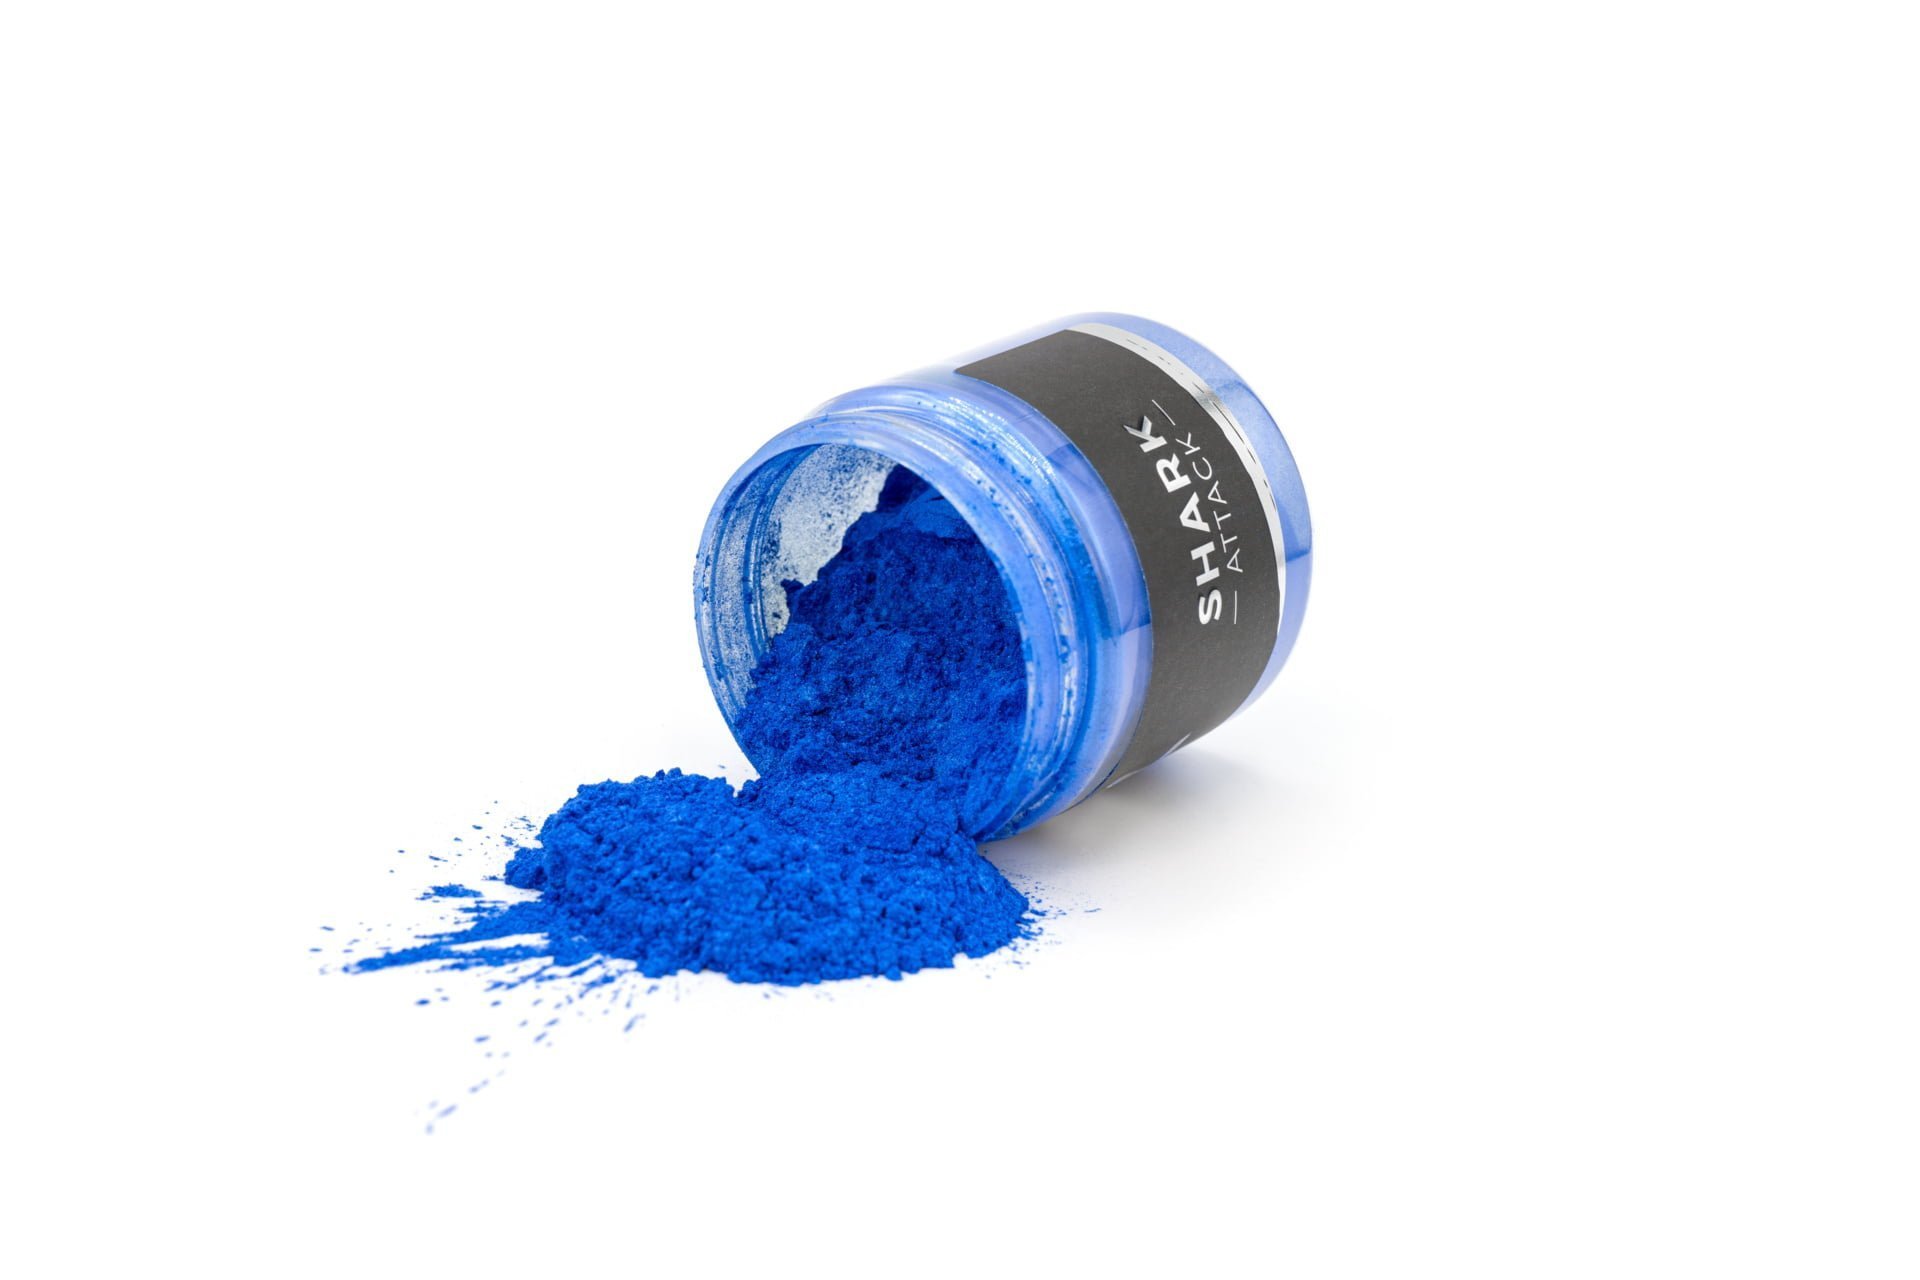 Epoxy Resin Navy Blue Liquid Pigment 